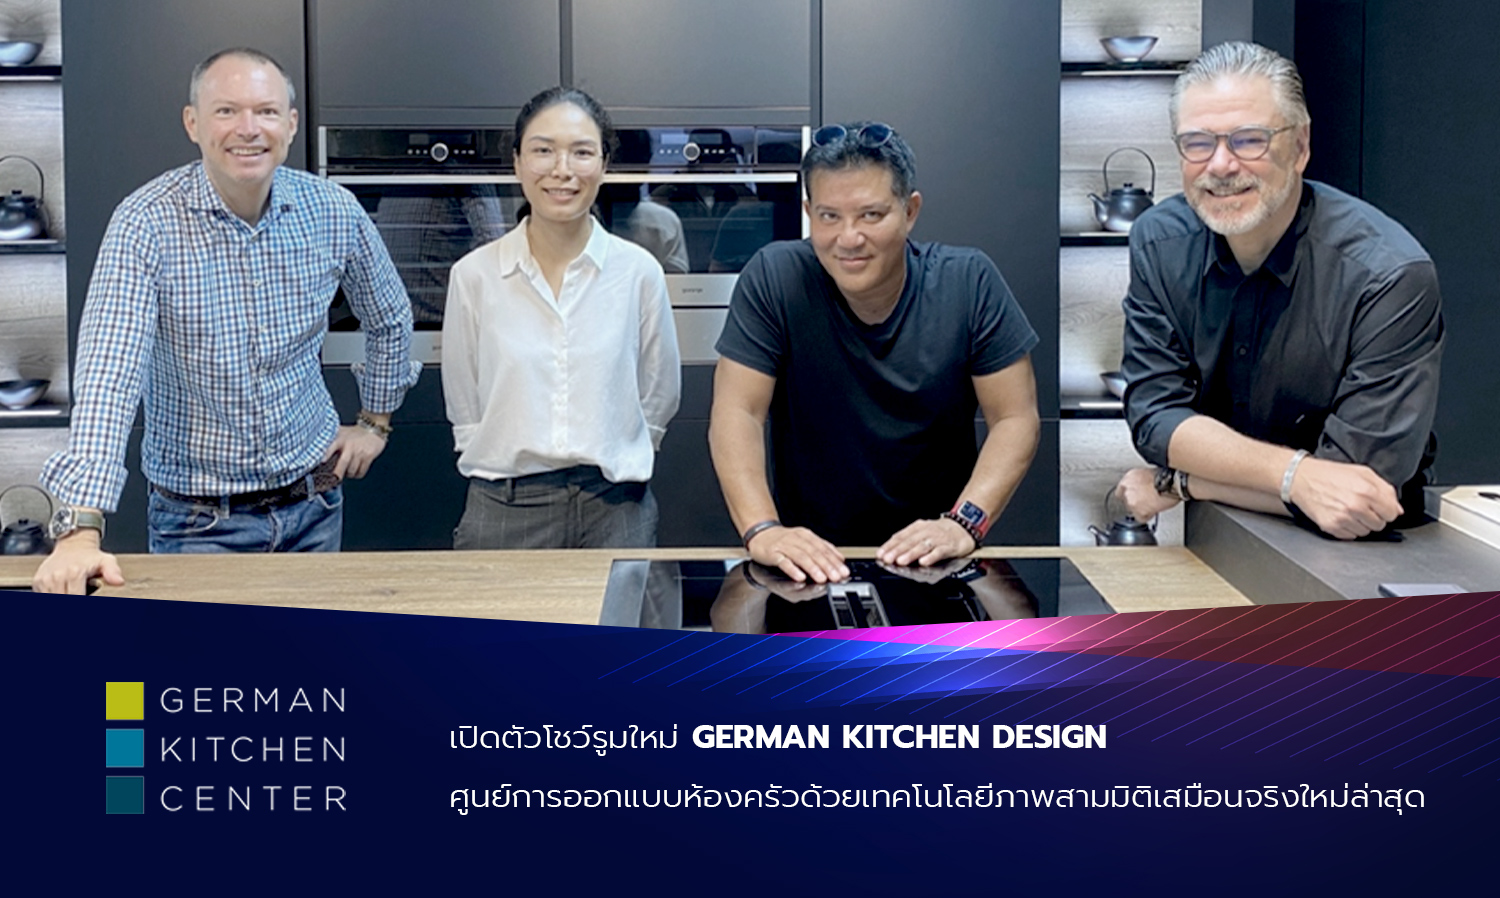 เปิดตัวโชว์รูมใหม่ GERMAN KITCHEN DESIGN ศูนย์การออกแบบห้องครัวด้วยเทคโนโลยีภาพสามมิติเสมือนจริงใหม่ล่าสุด 